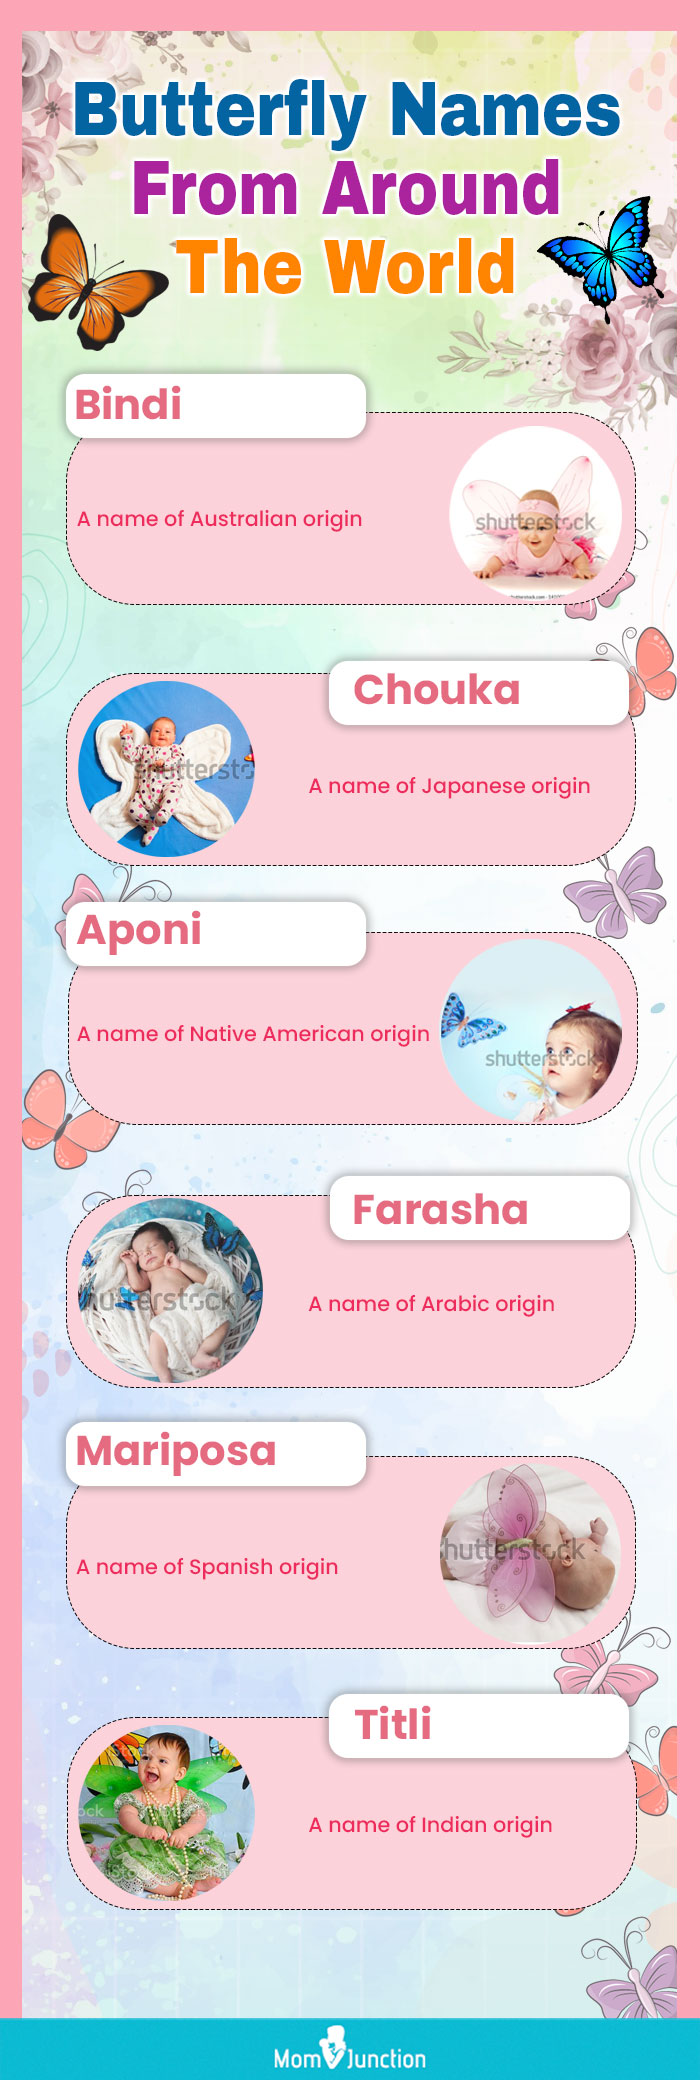 蝴蝶宝宝的名字(信息图)